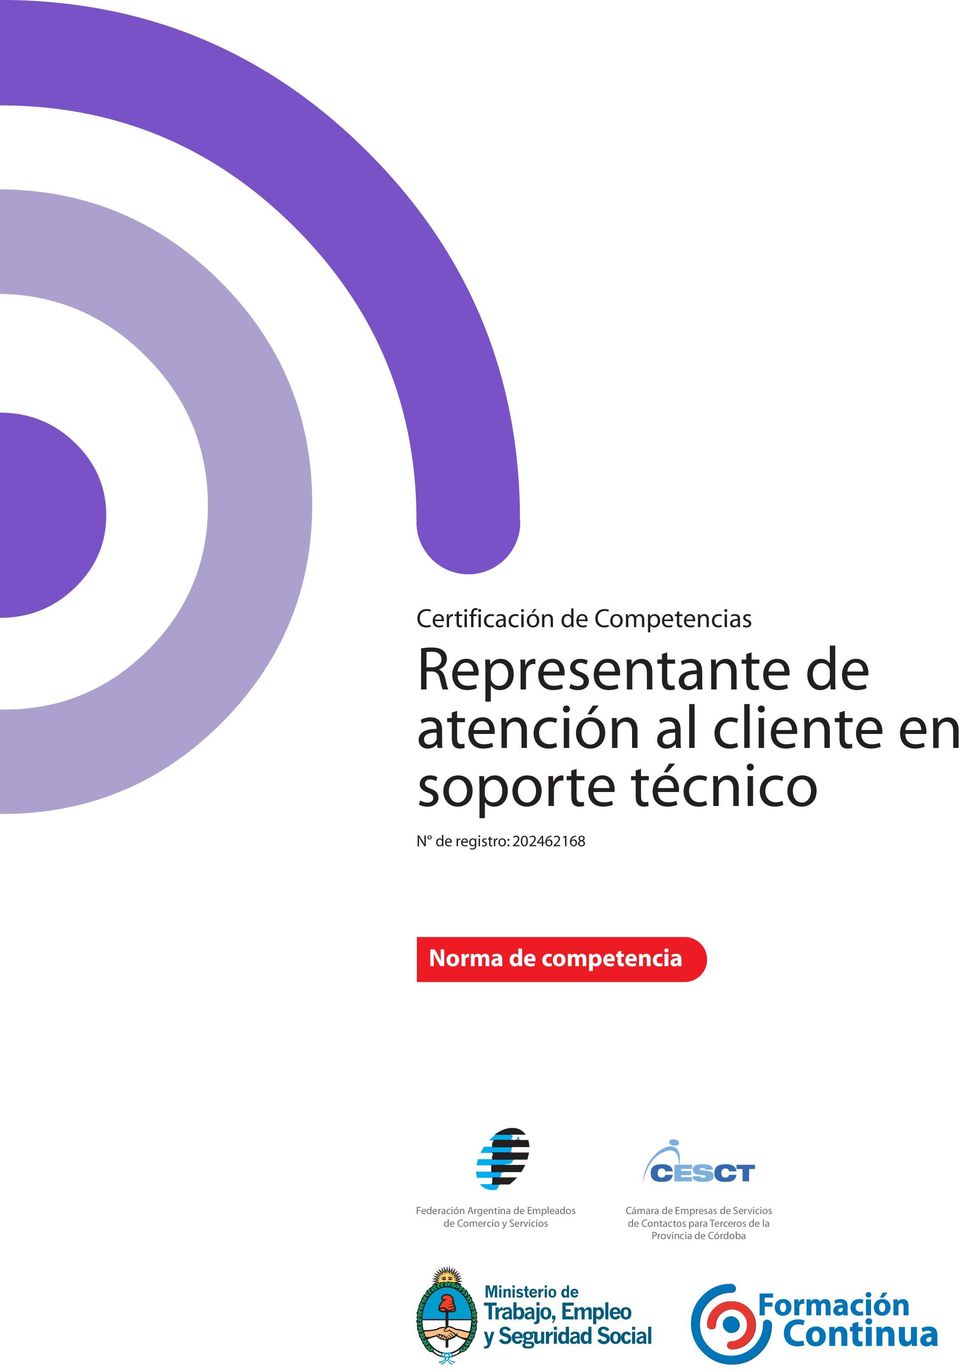 Federación Argentina de Empleados de Comercio y Servicios Cámara de